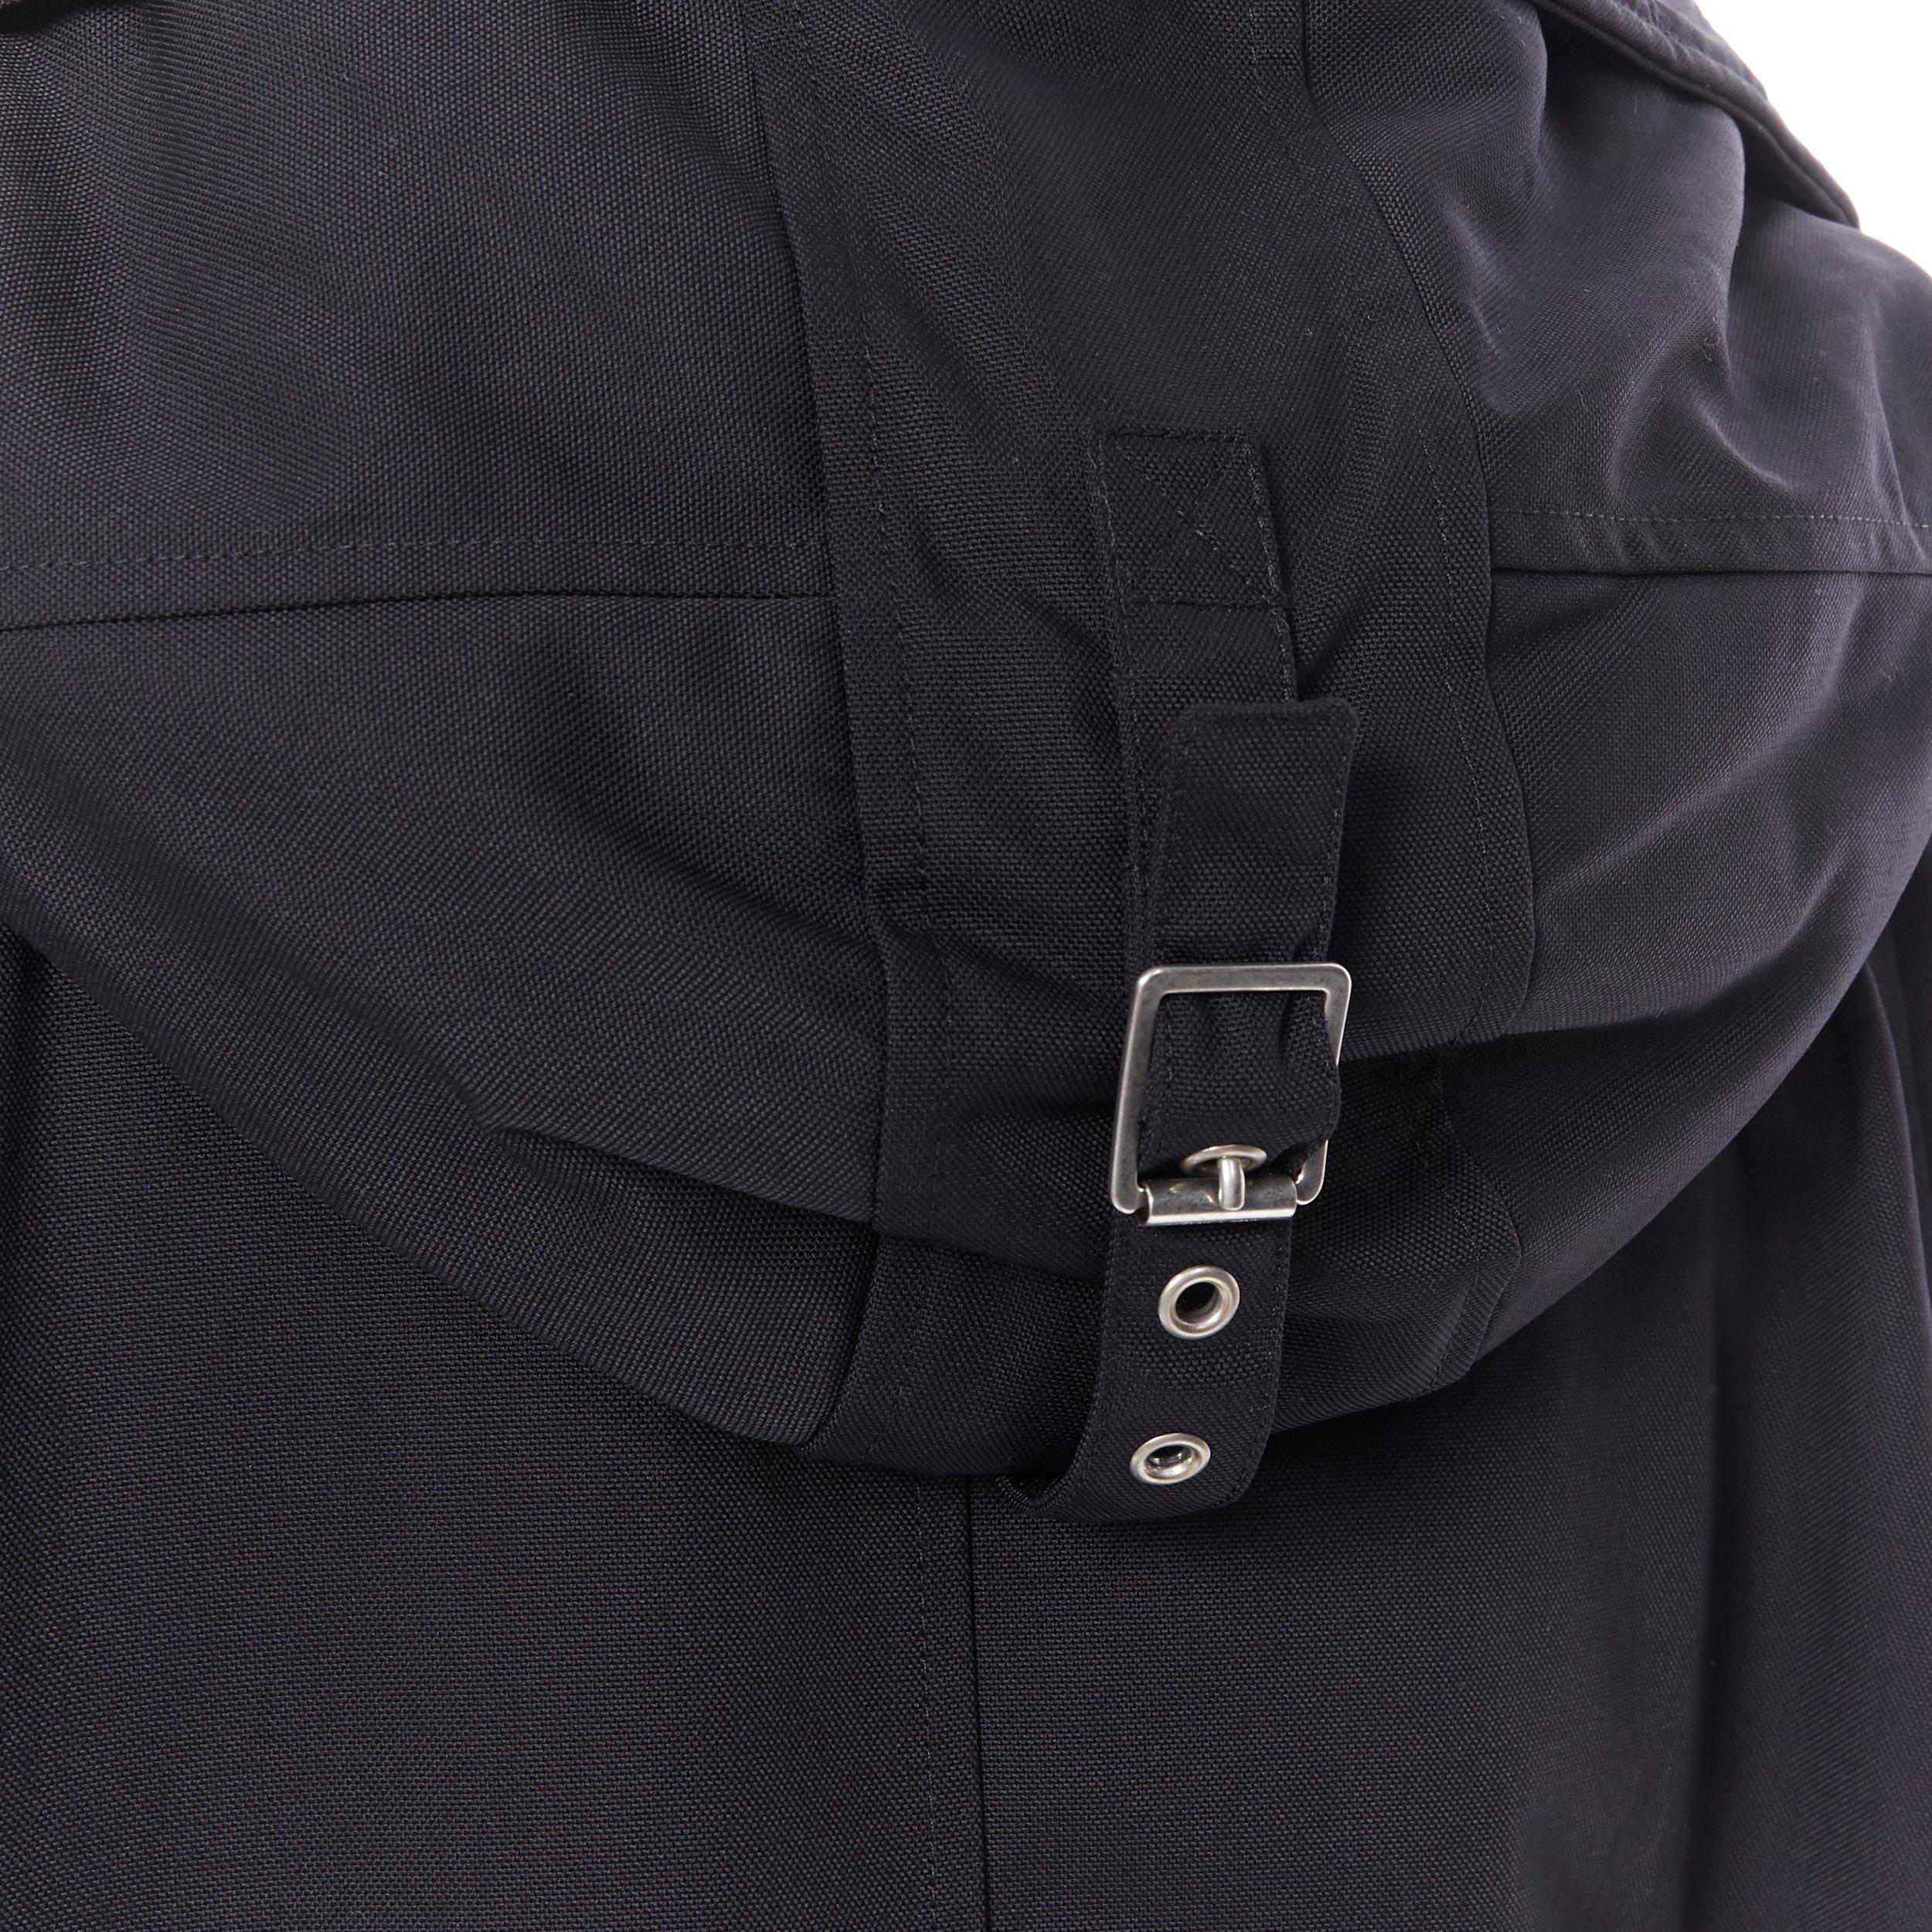 SAINT LAURENT HEDI SLIMANE 2015 black nylon zip front hooded parka coat FR36 6